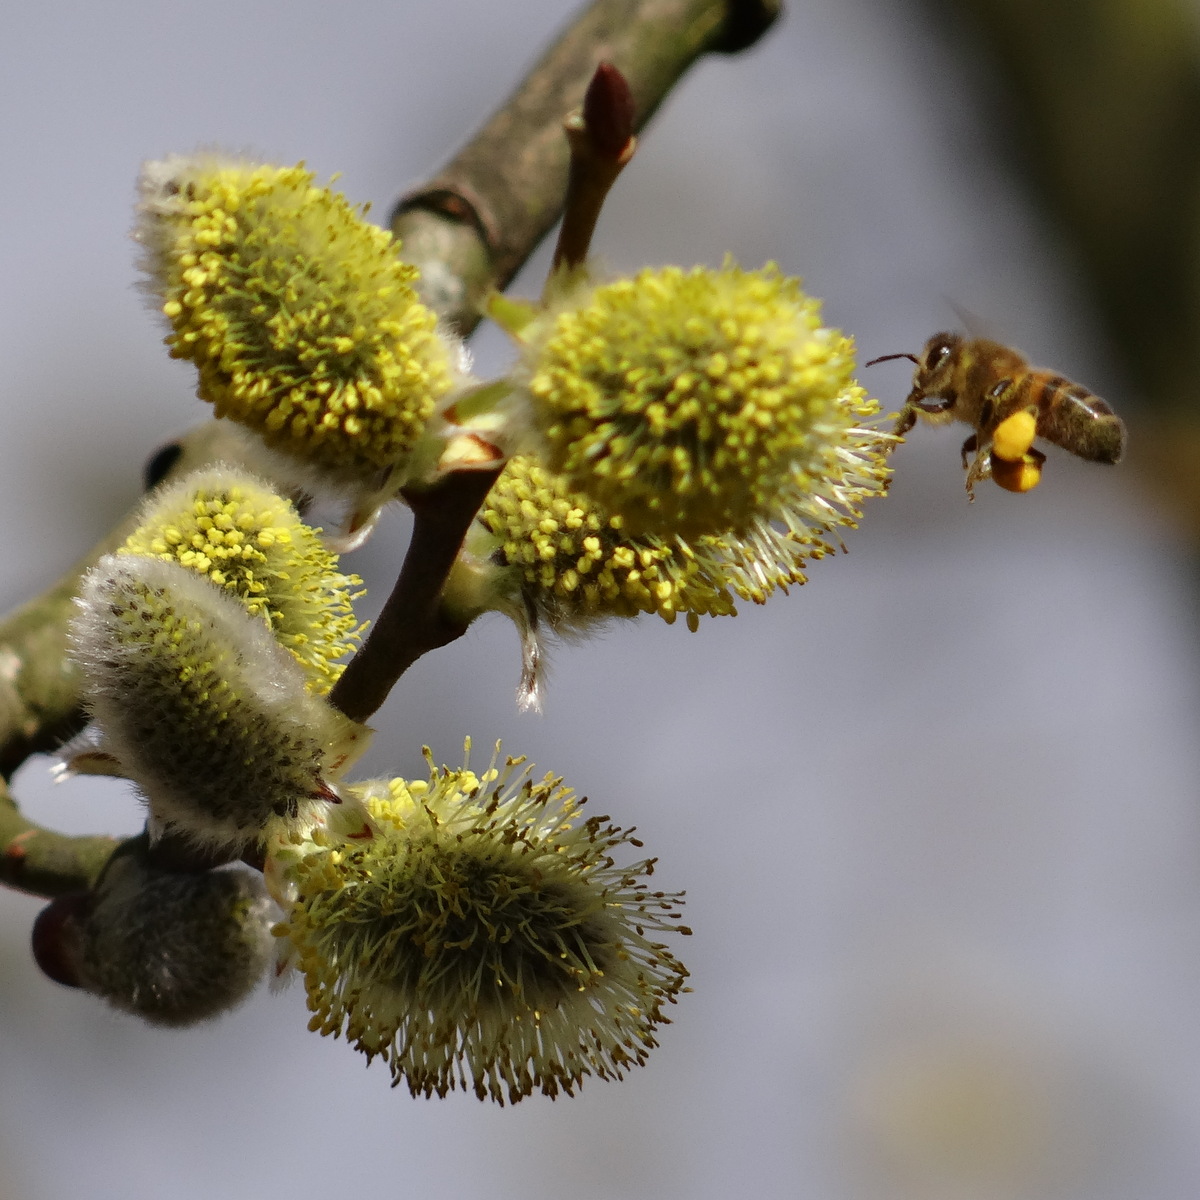 le pollen est récolté sur les pattes postérieures de l'abeille © Gilles Carcasses 